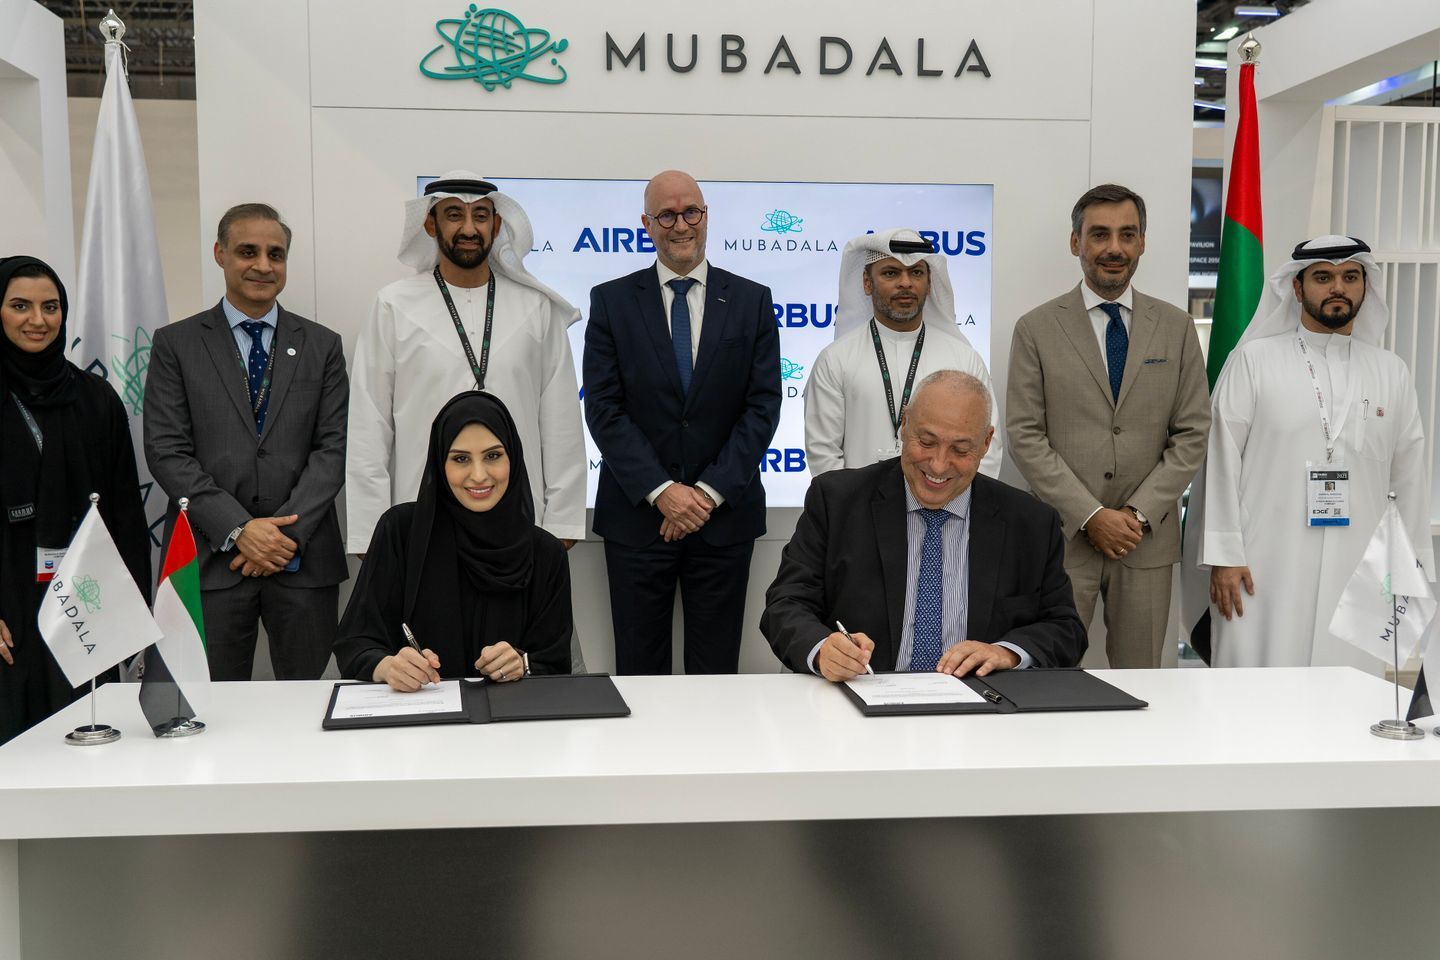 Penandatanganan perjanjian antara Mubadala dan Airbus